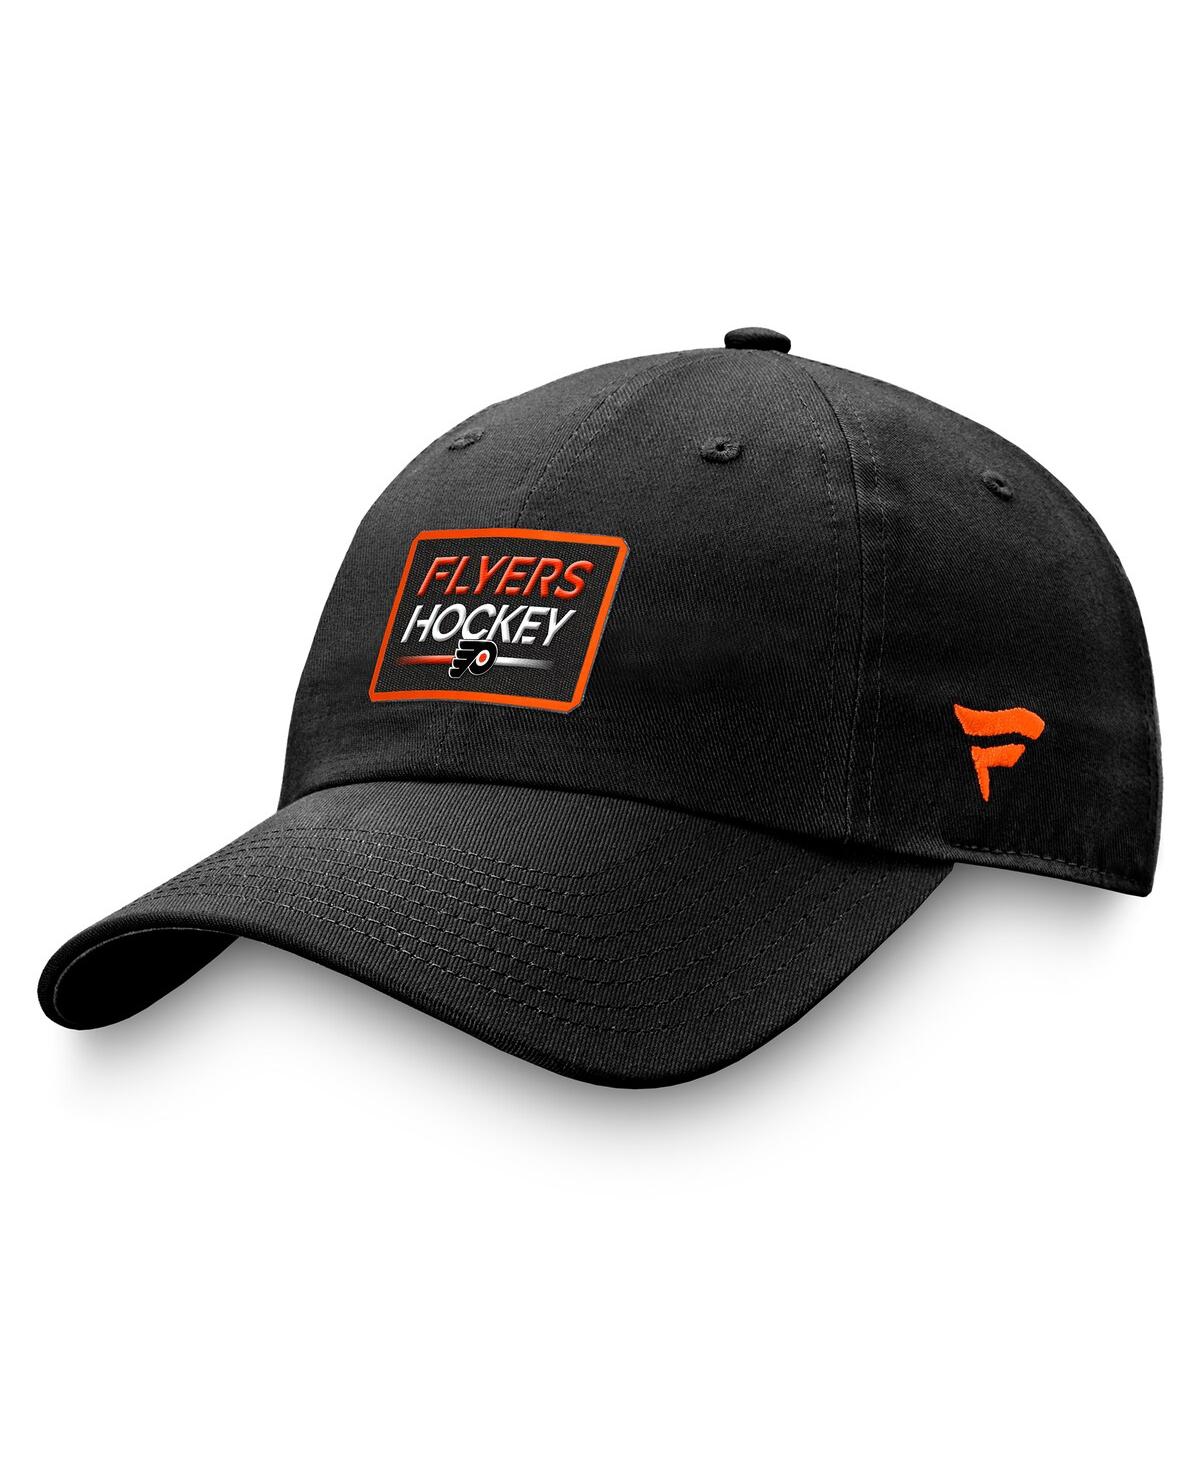 Shop Fanatics Men's  Black Philadelphia Flyers Authentic Pro Prime Adjustable Hat